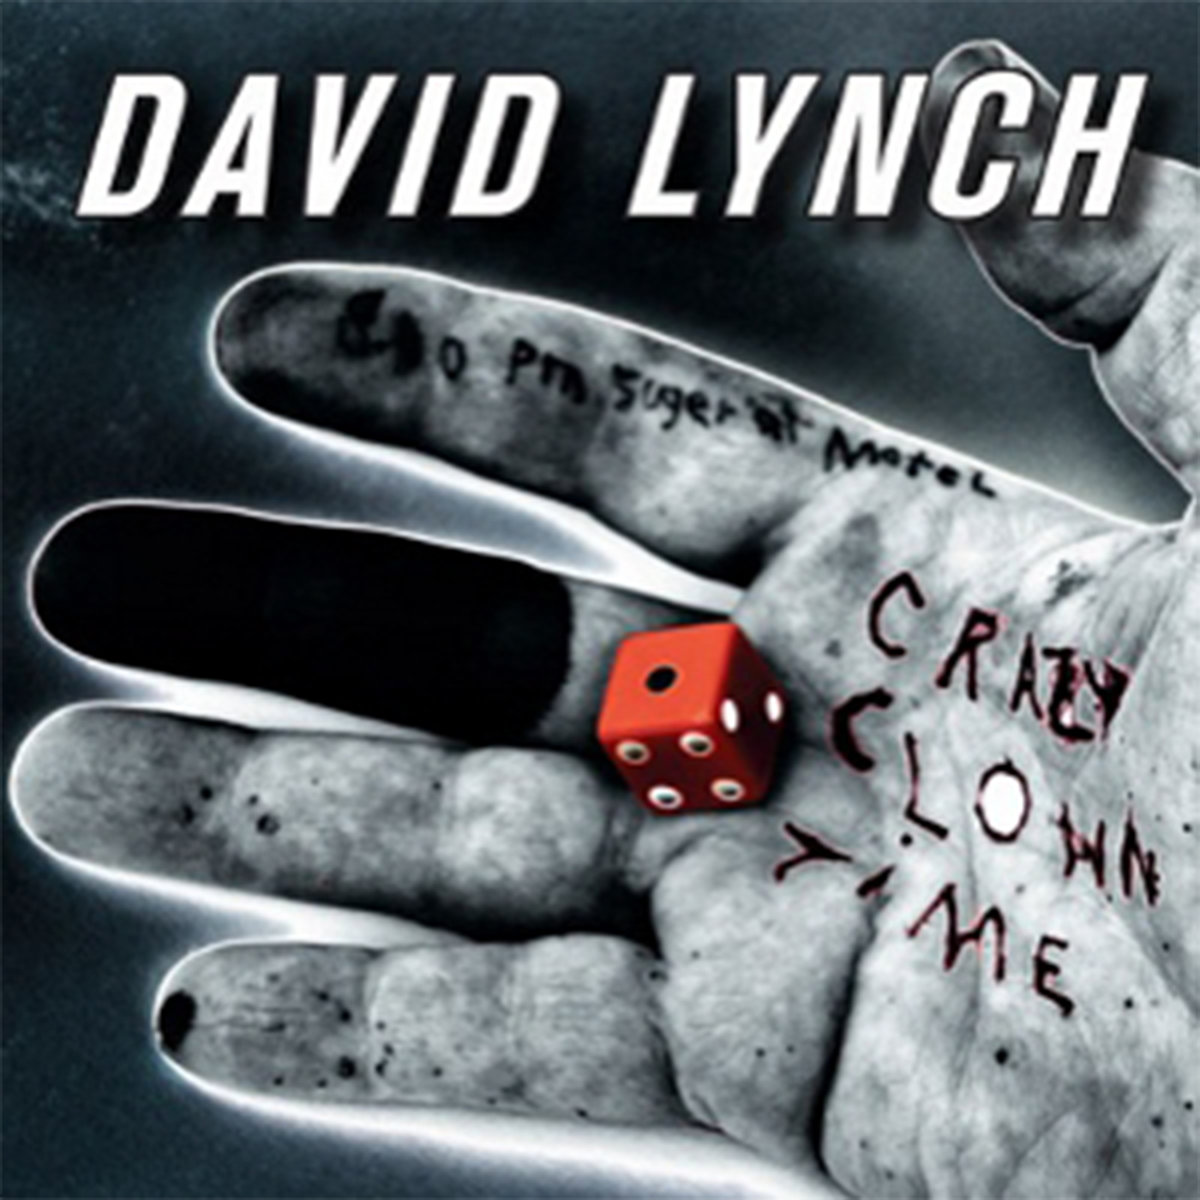 David Lynch cover